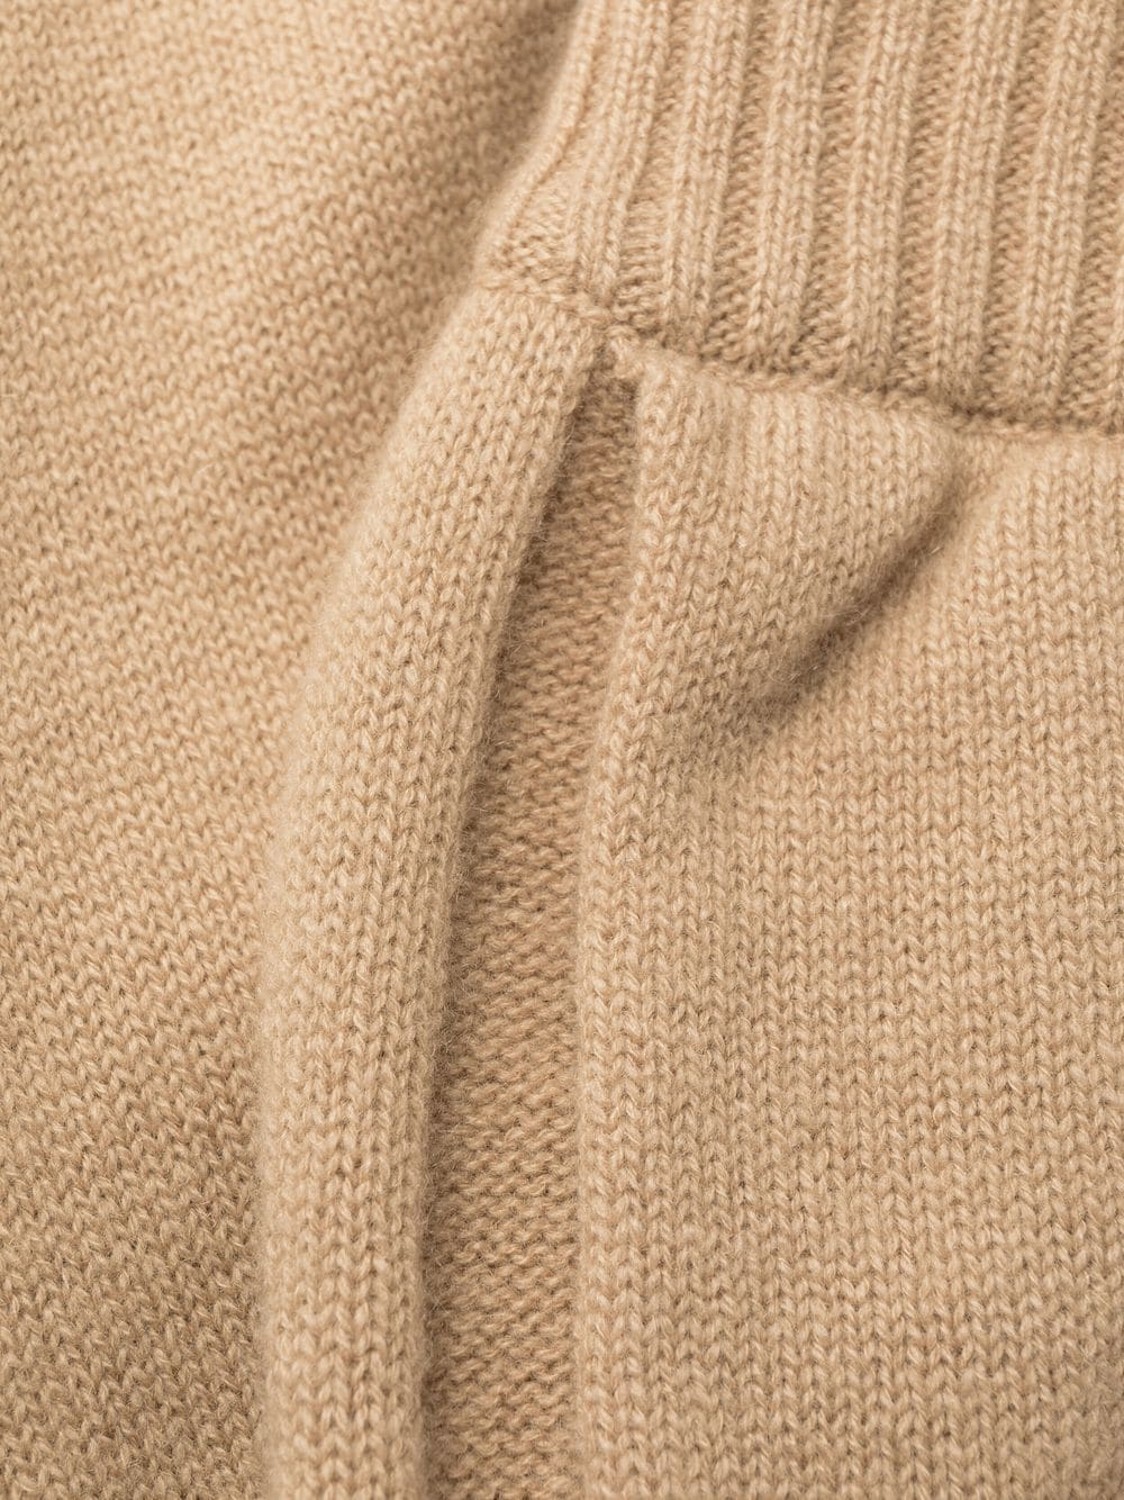 shop MSGM  Pantaloni: Pantaloni MSGM, jogging, elastico in vita, tasche laterali, gamba regolare con polsino infondo, color cammello.

Composizione: 70% lana vergine, 30% cashmere. number 2423